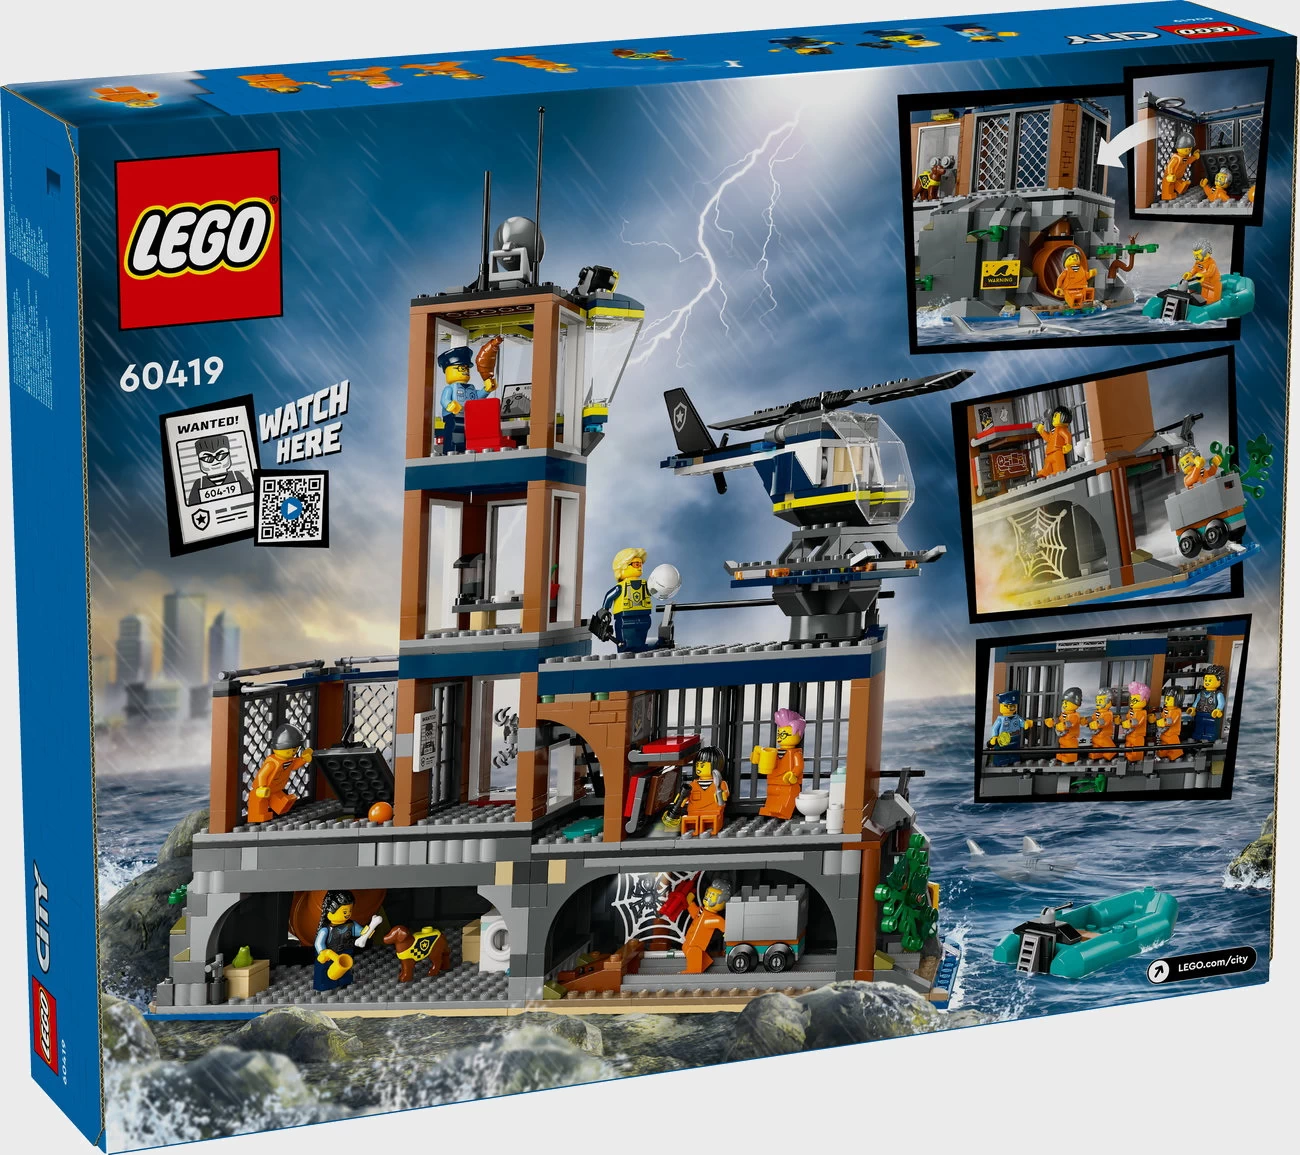 LEGO City 60419 - Polizeistation auf der Gefängnisinsel